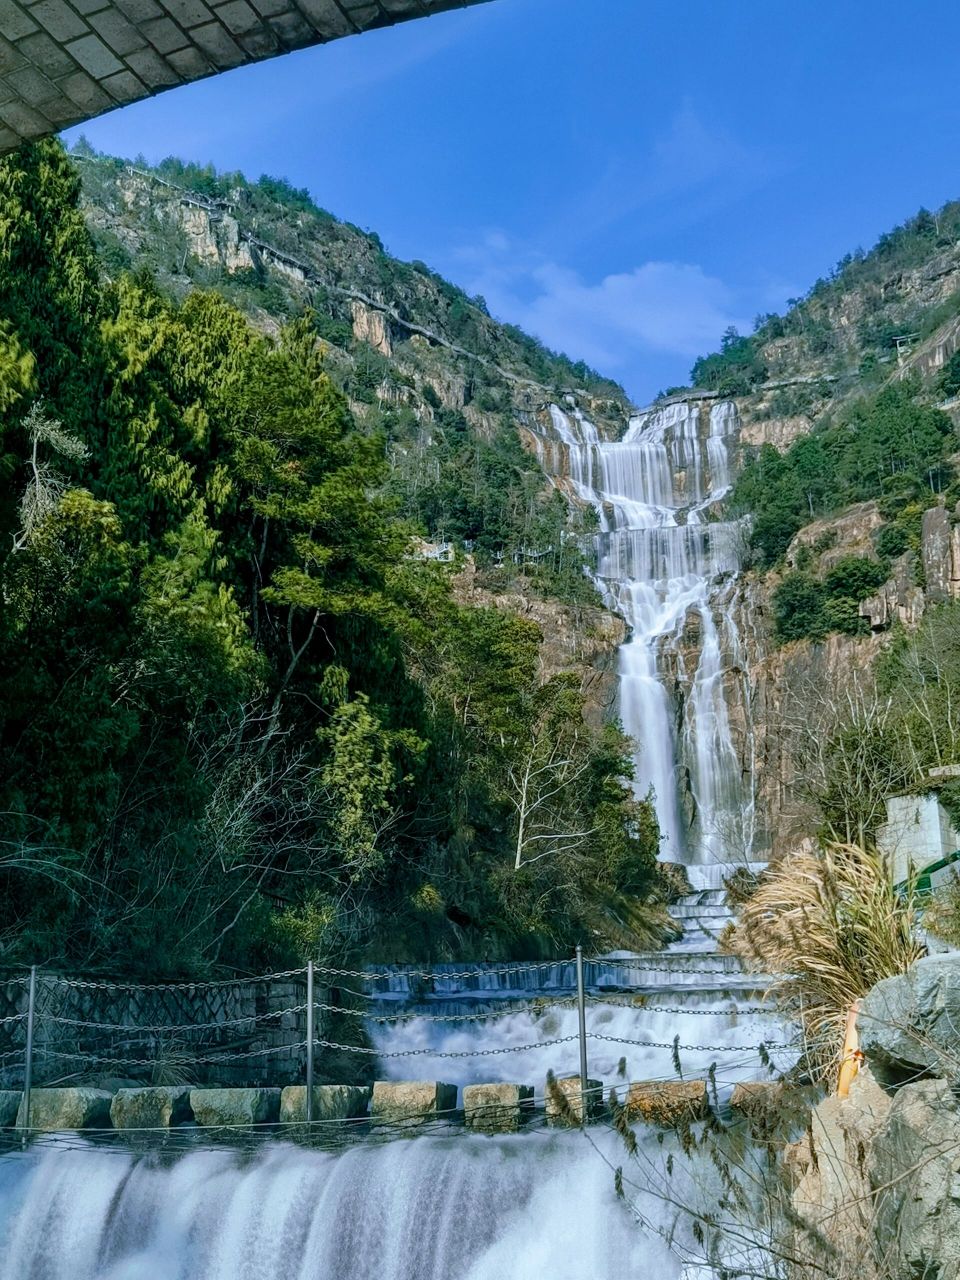 位于浙江省临海市天台山脉的天台山大瀑布,是国家aaaa级旅游景区